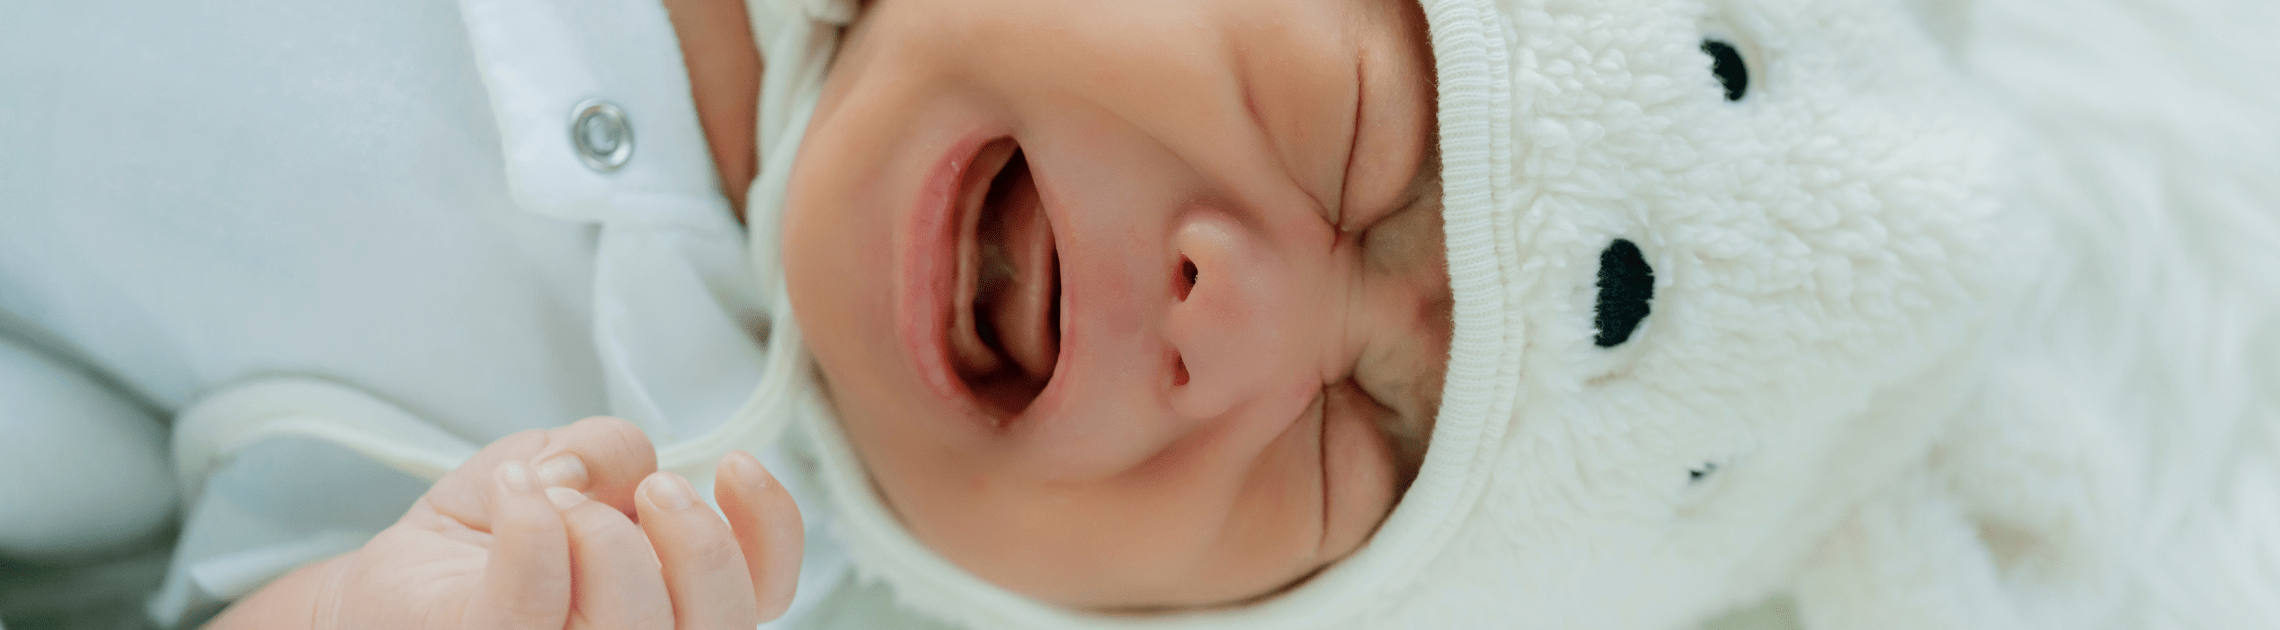 bebé llorando por laringitis